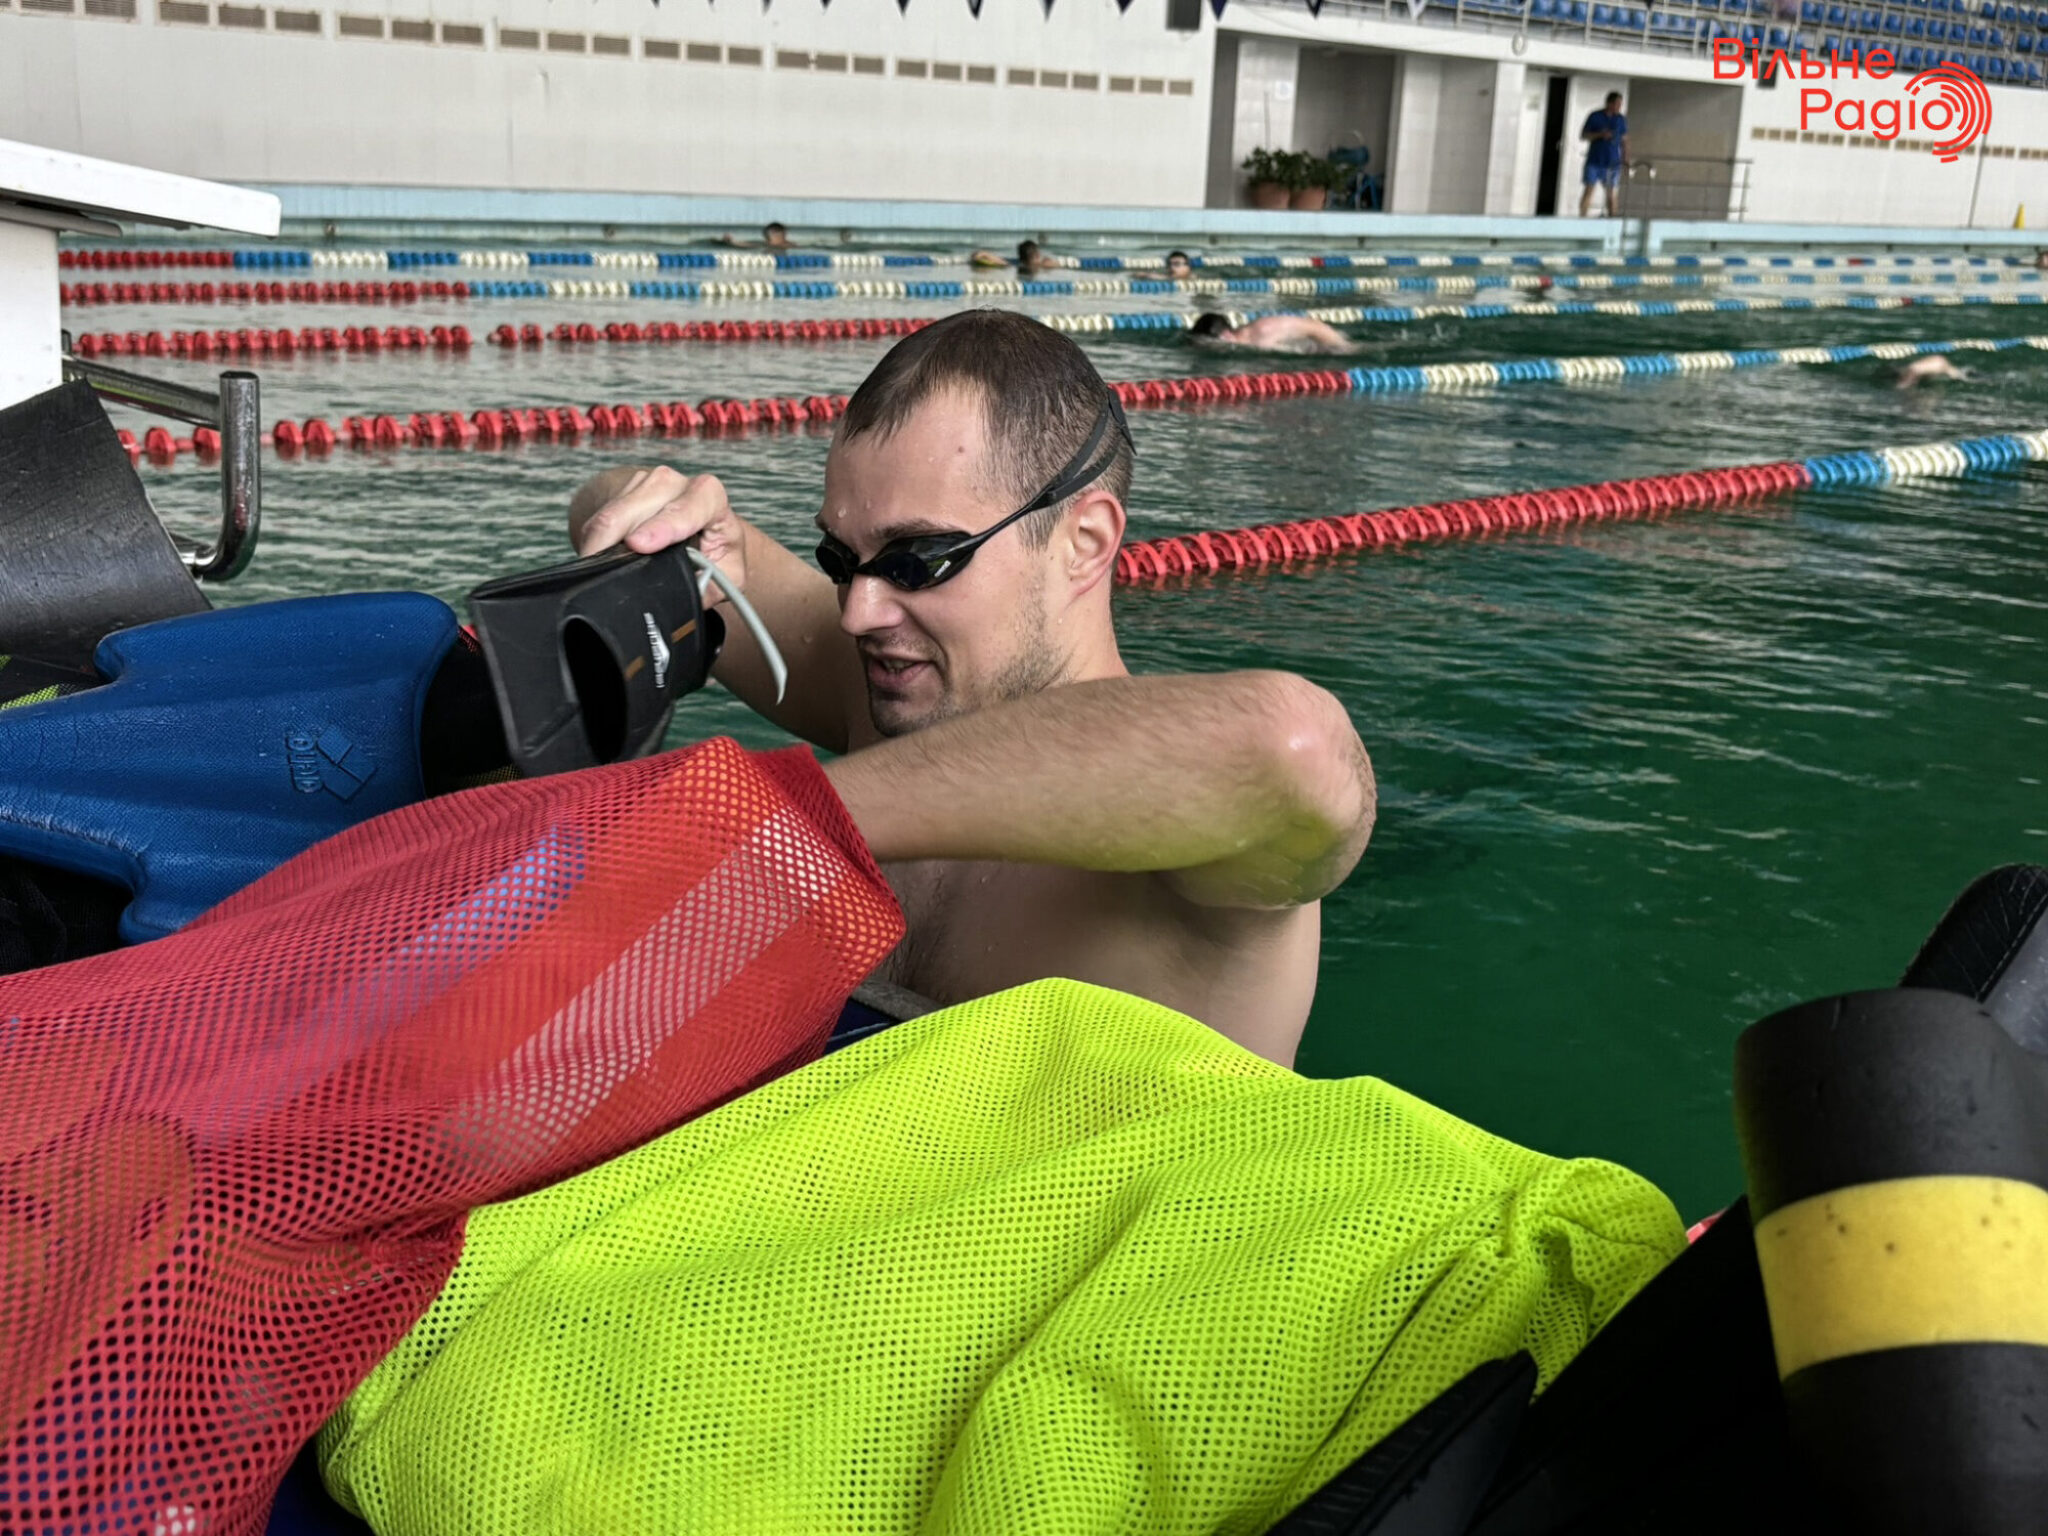 Данило Чуфаров на тренуванні у басейні Кам’янського